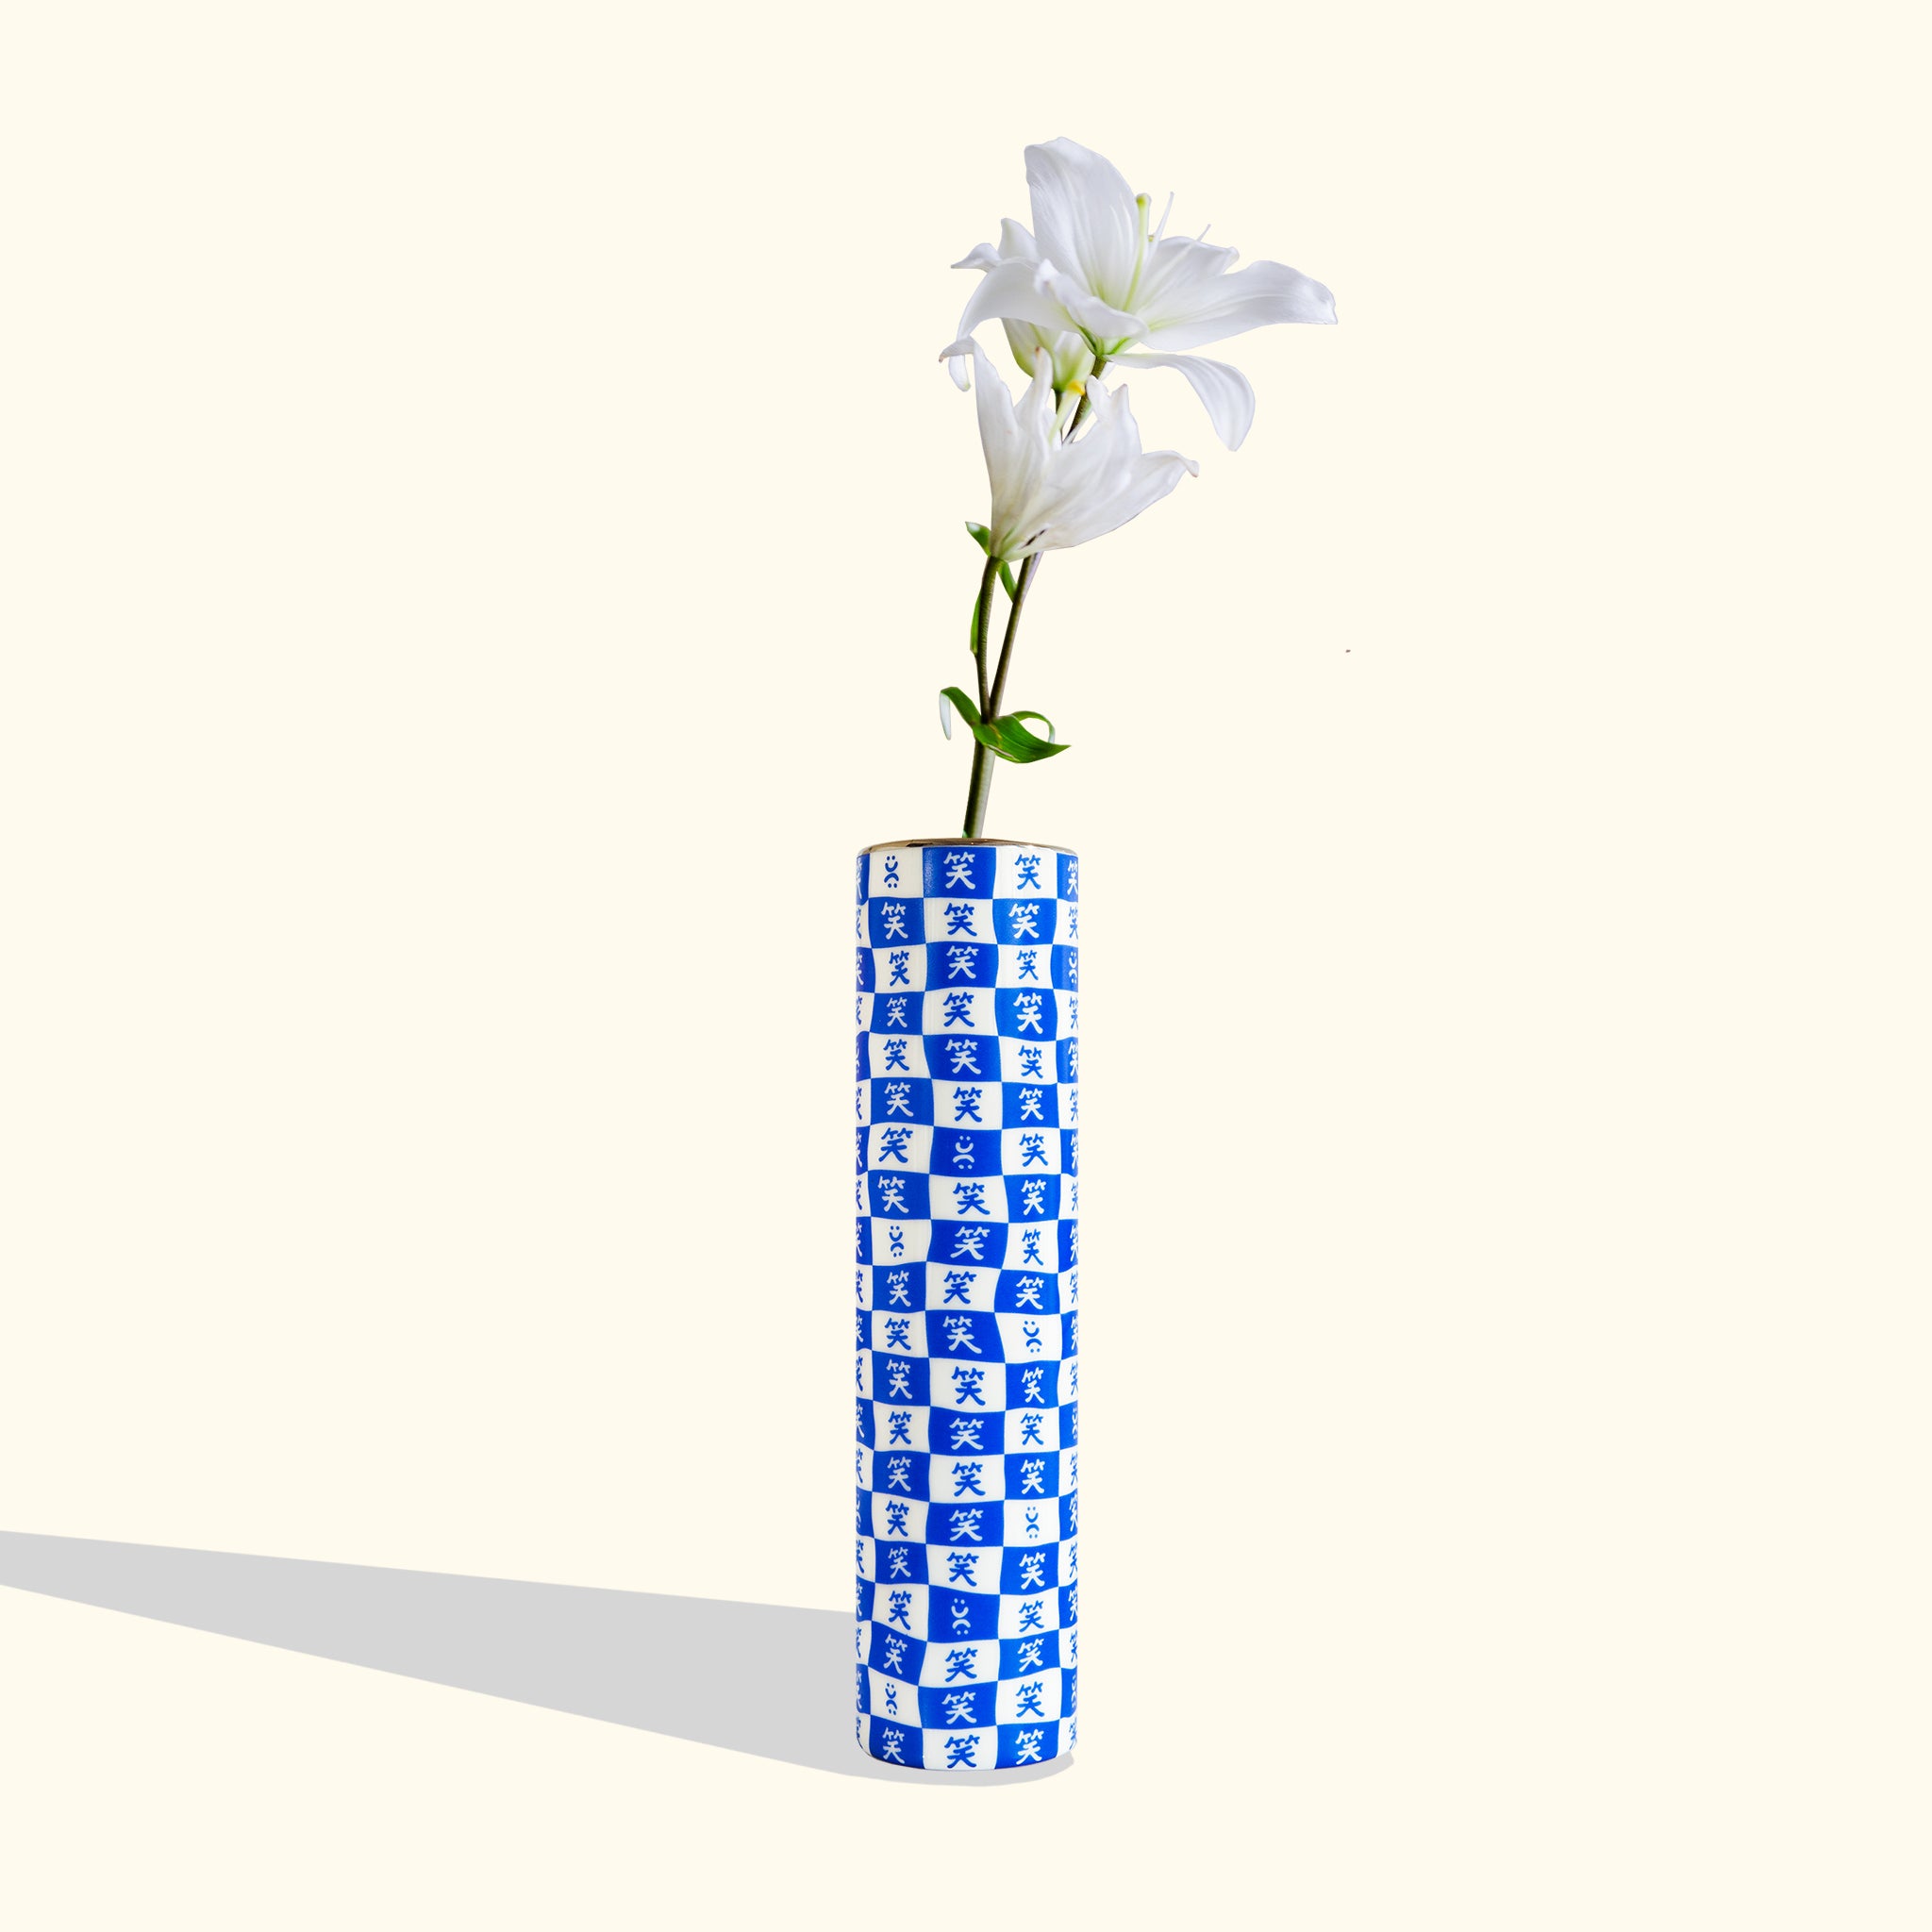 home decor designed in hk handmade hundred smiles vases minimal modern